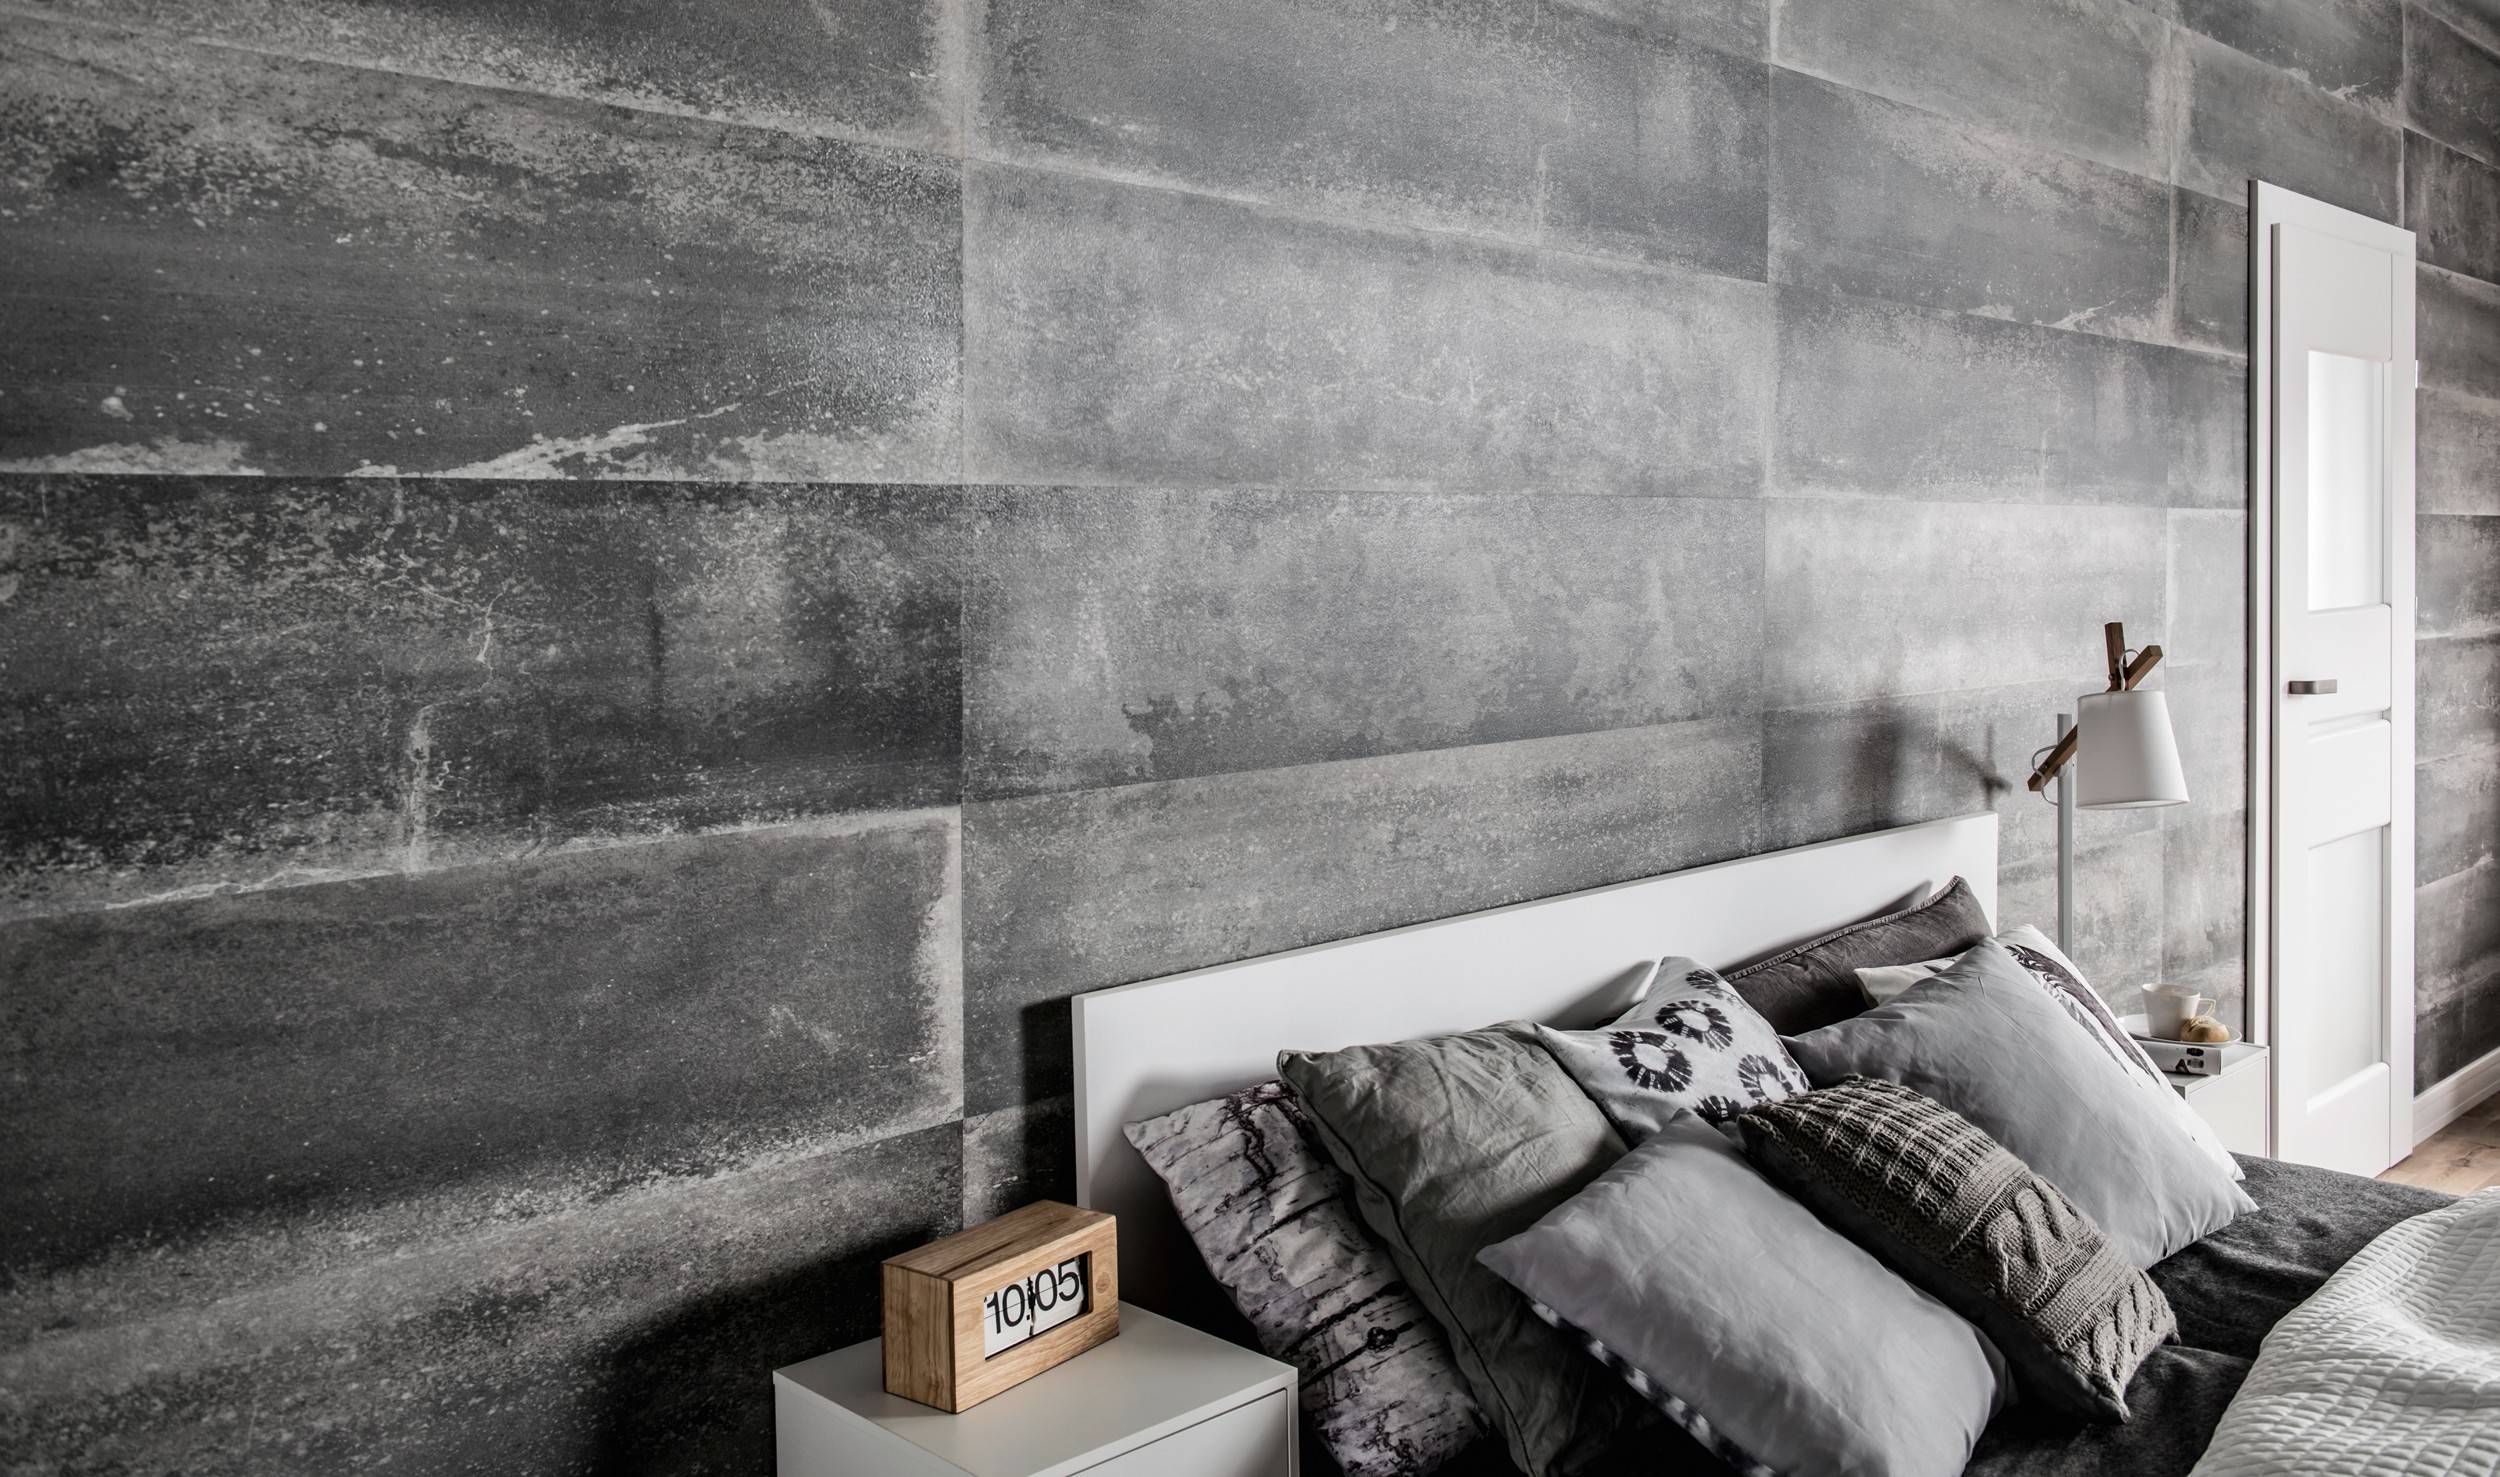 Бетон и бетонная стена в интерьере квартиры. популярные варианты создания дизайна с помощью бетона.